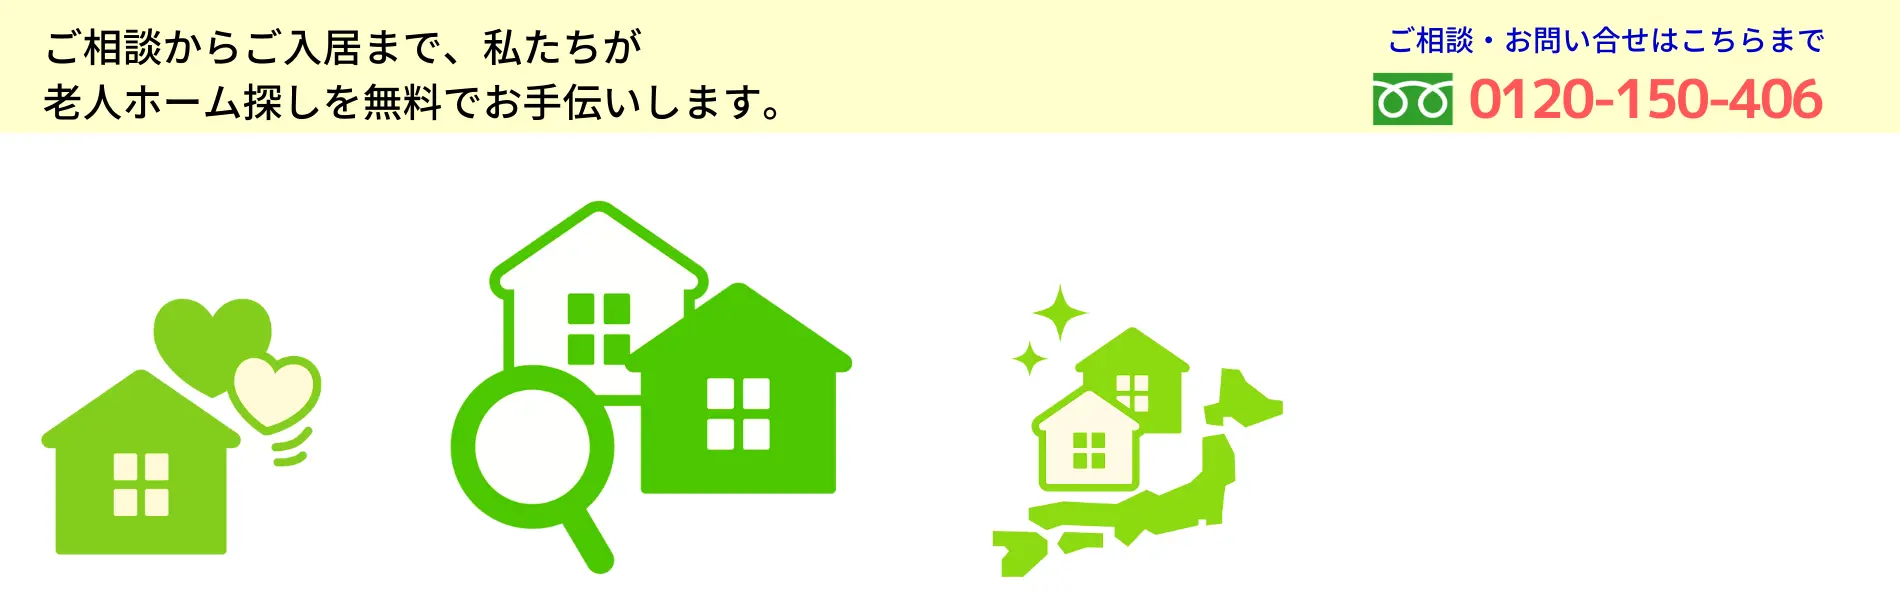 岐阜県の老人ホーム探しは、岐阜県愛知高齢者住まいのサポートセンター